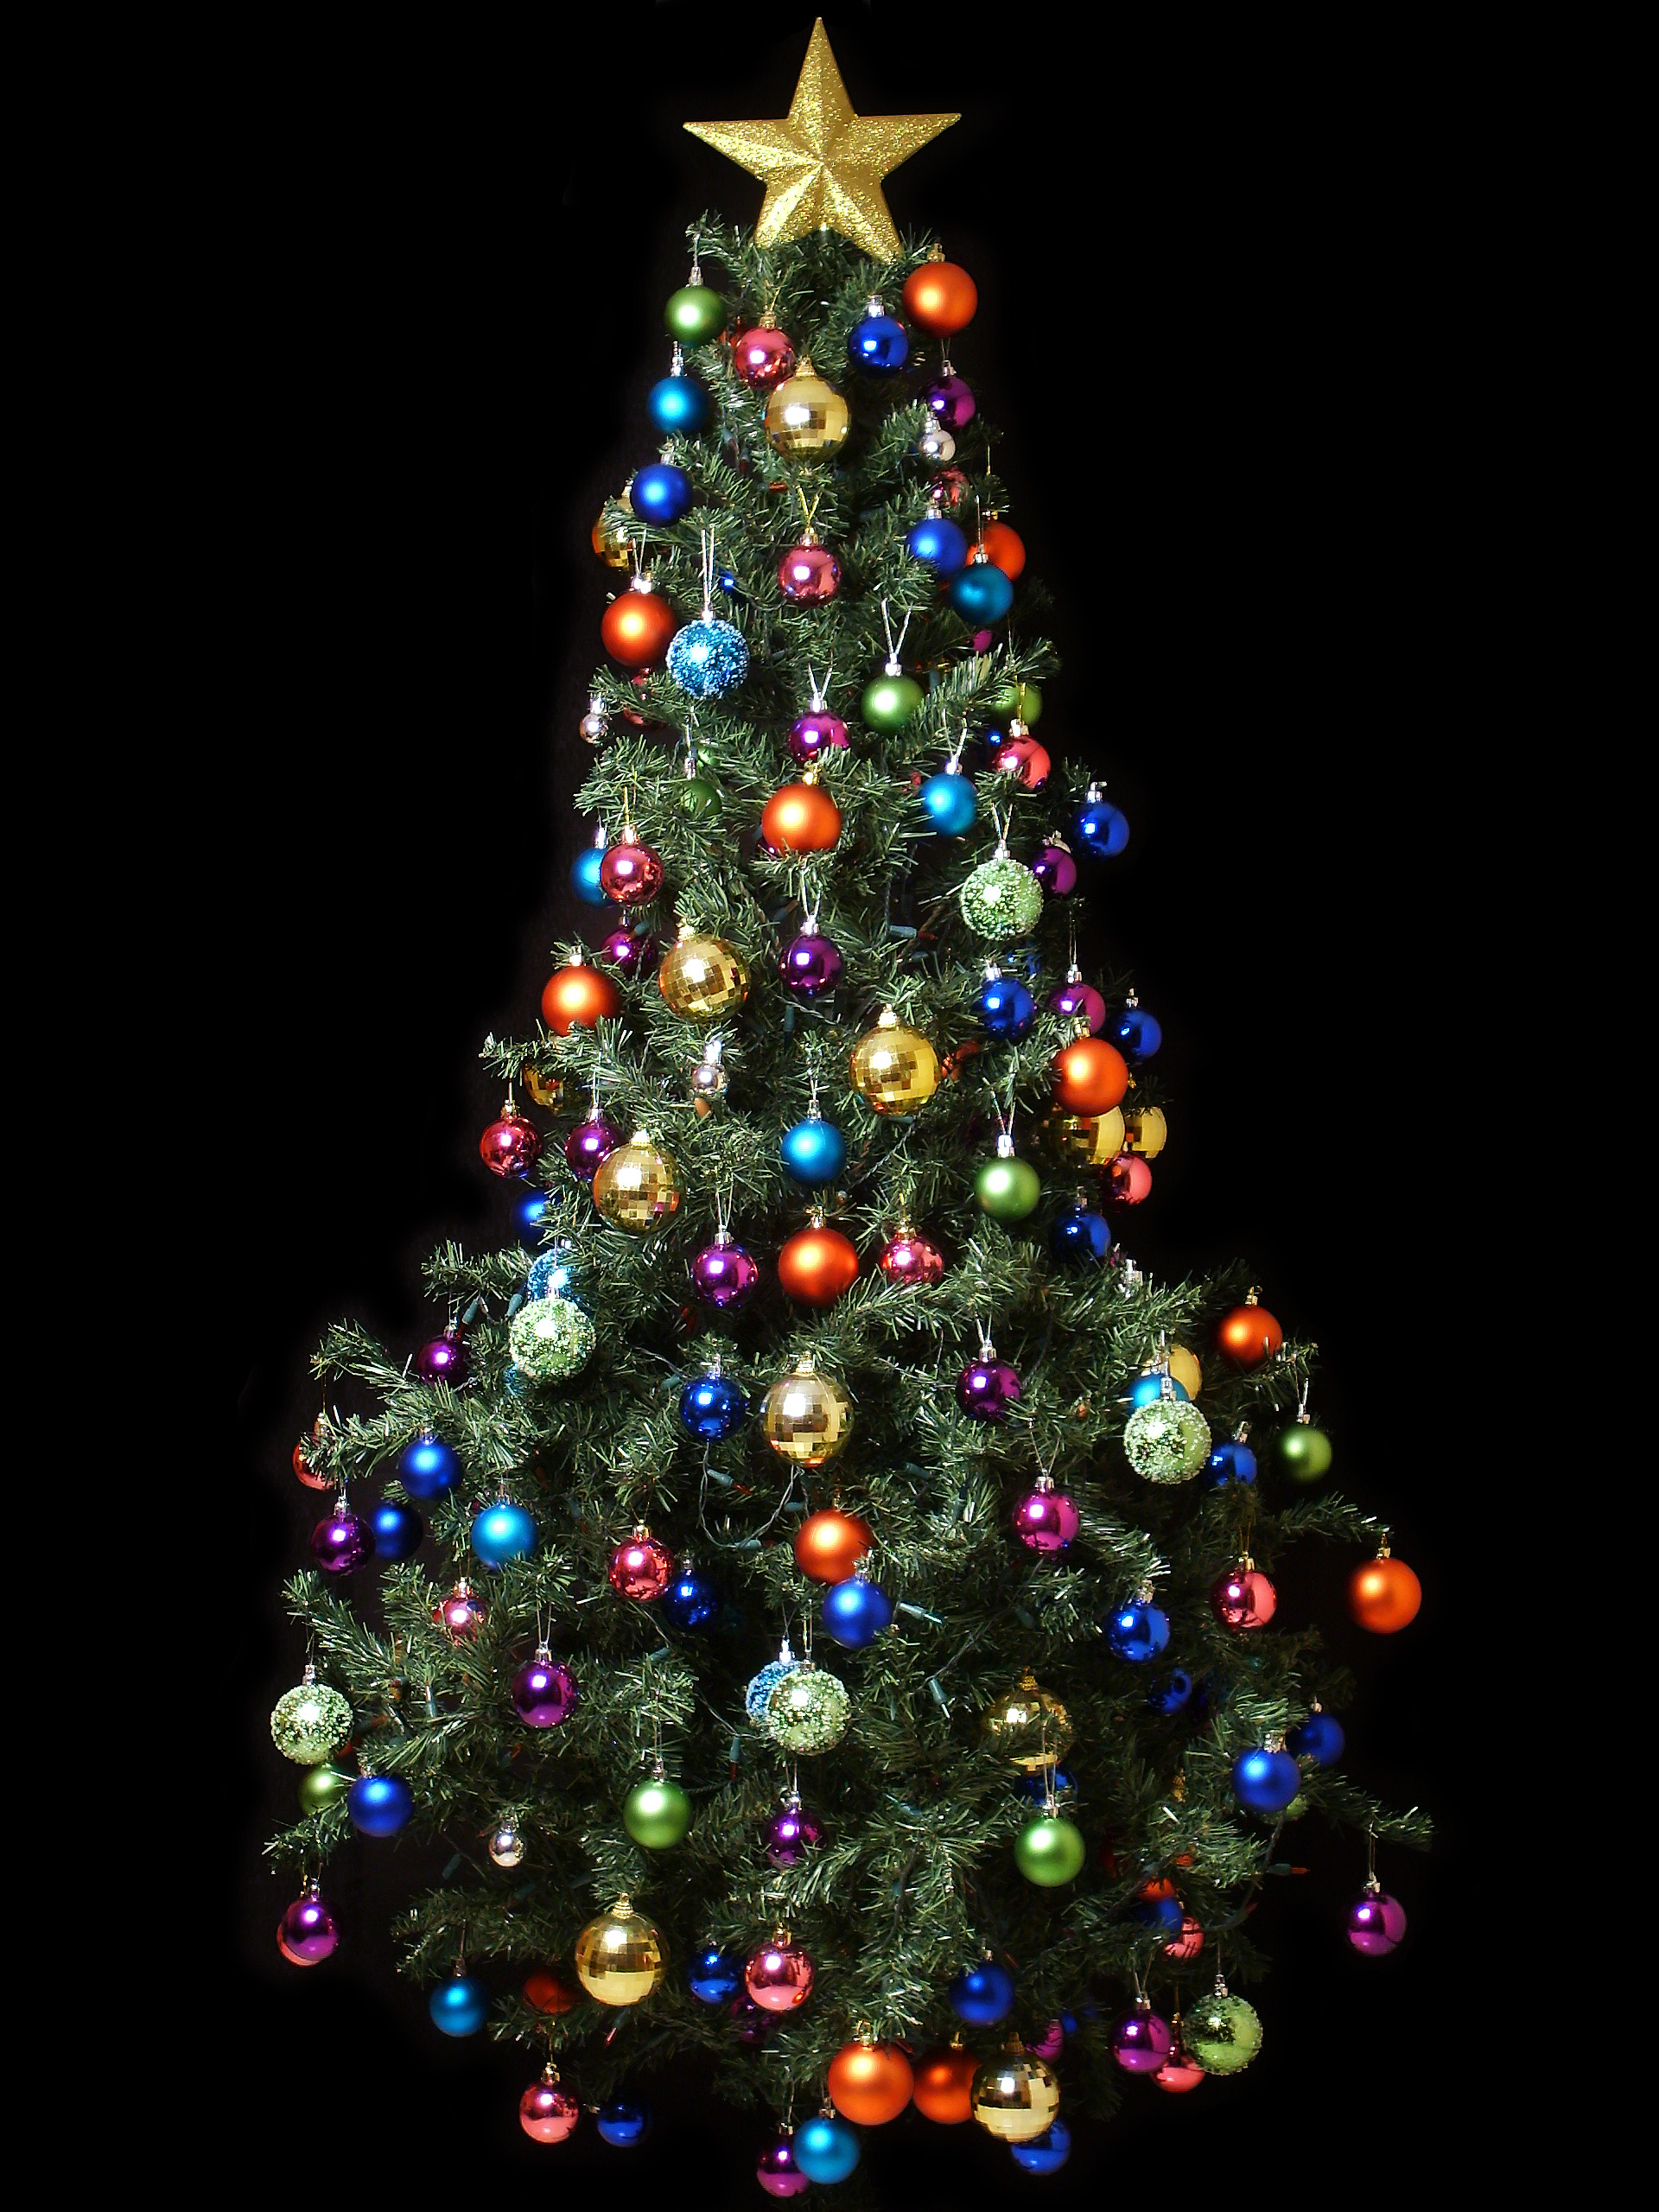 8 de diciembre es el día del armar el árbol de navidad ¿de dónde viene esa costumbre?